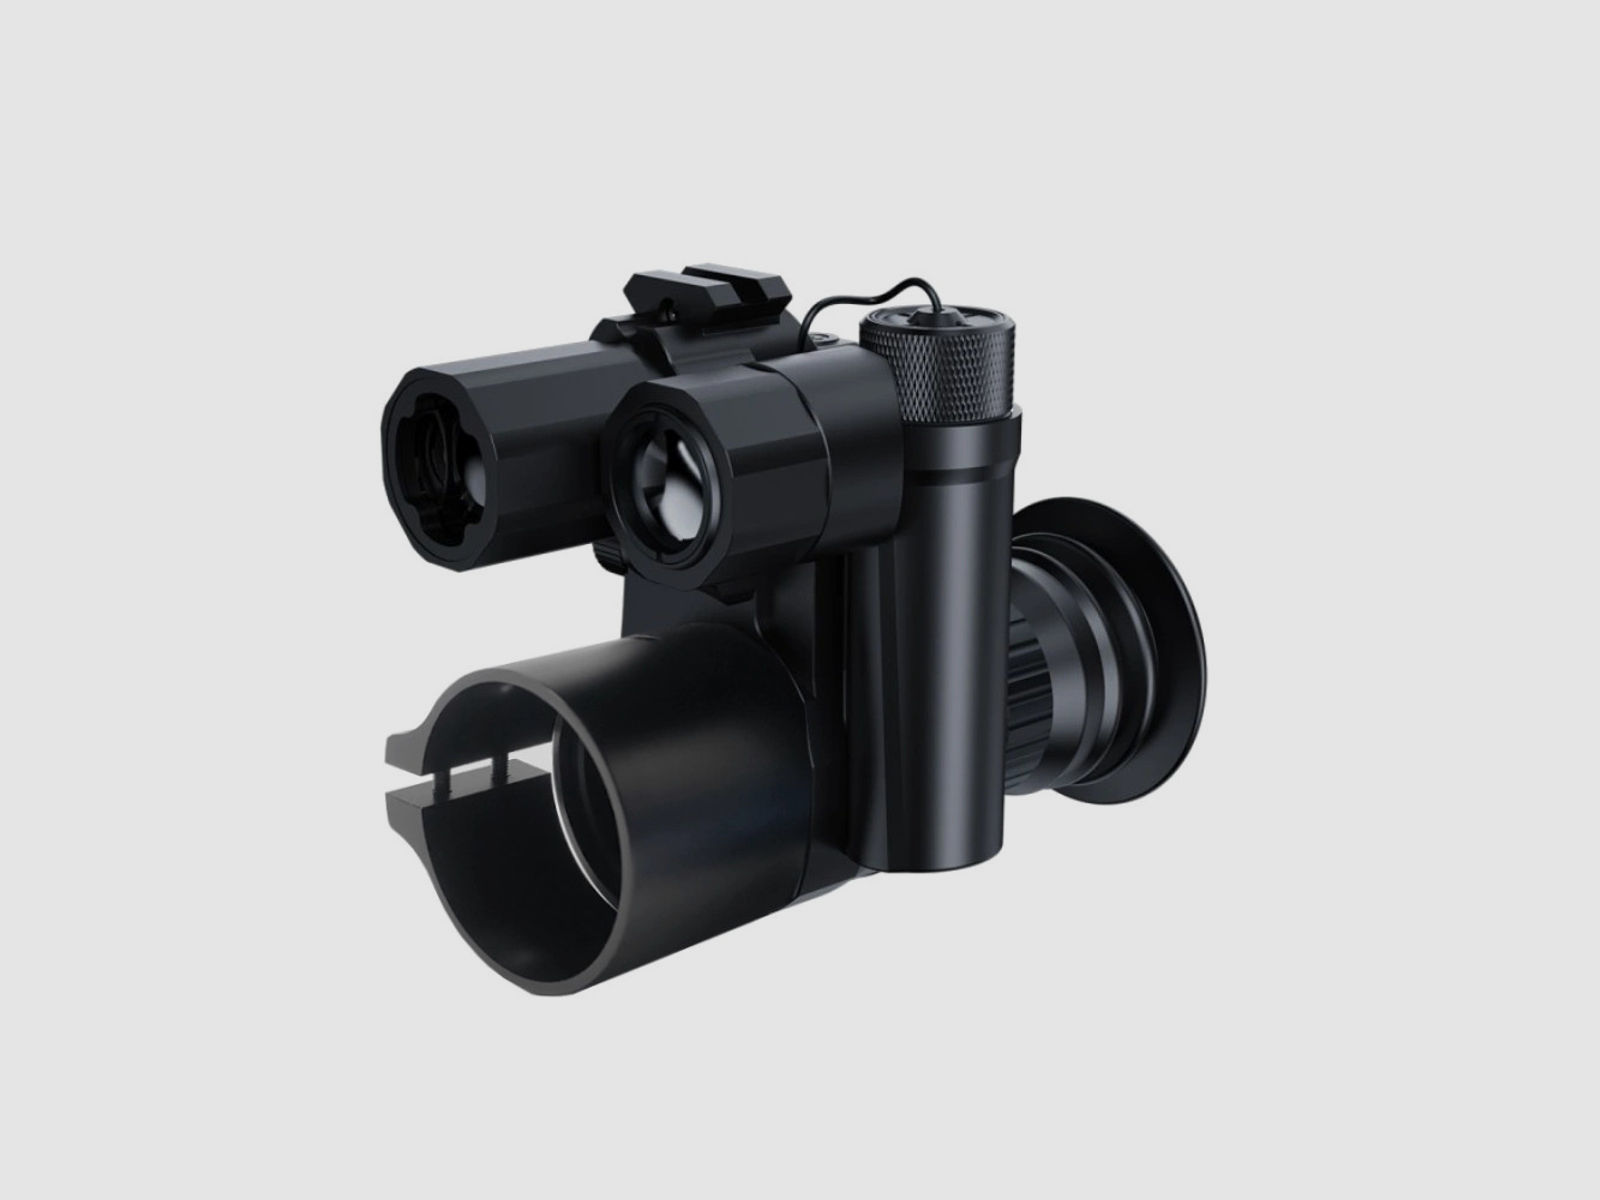 PARD NV007SP Nachtsichtgerät / Nachsatzgerät - 940 nm mit LRF 45 - 39 mm Standardadapter (inkl. Reduzierringen)